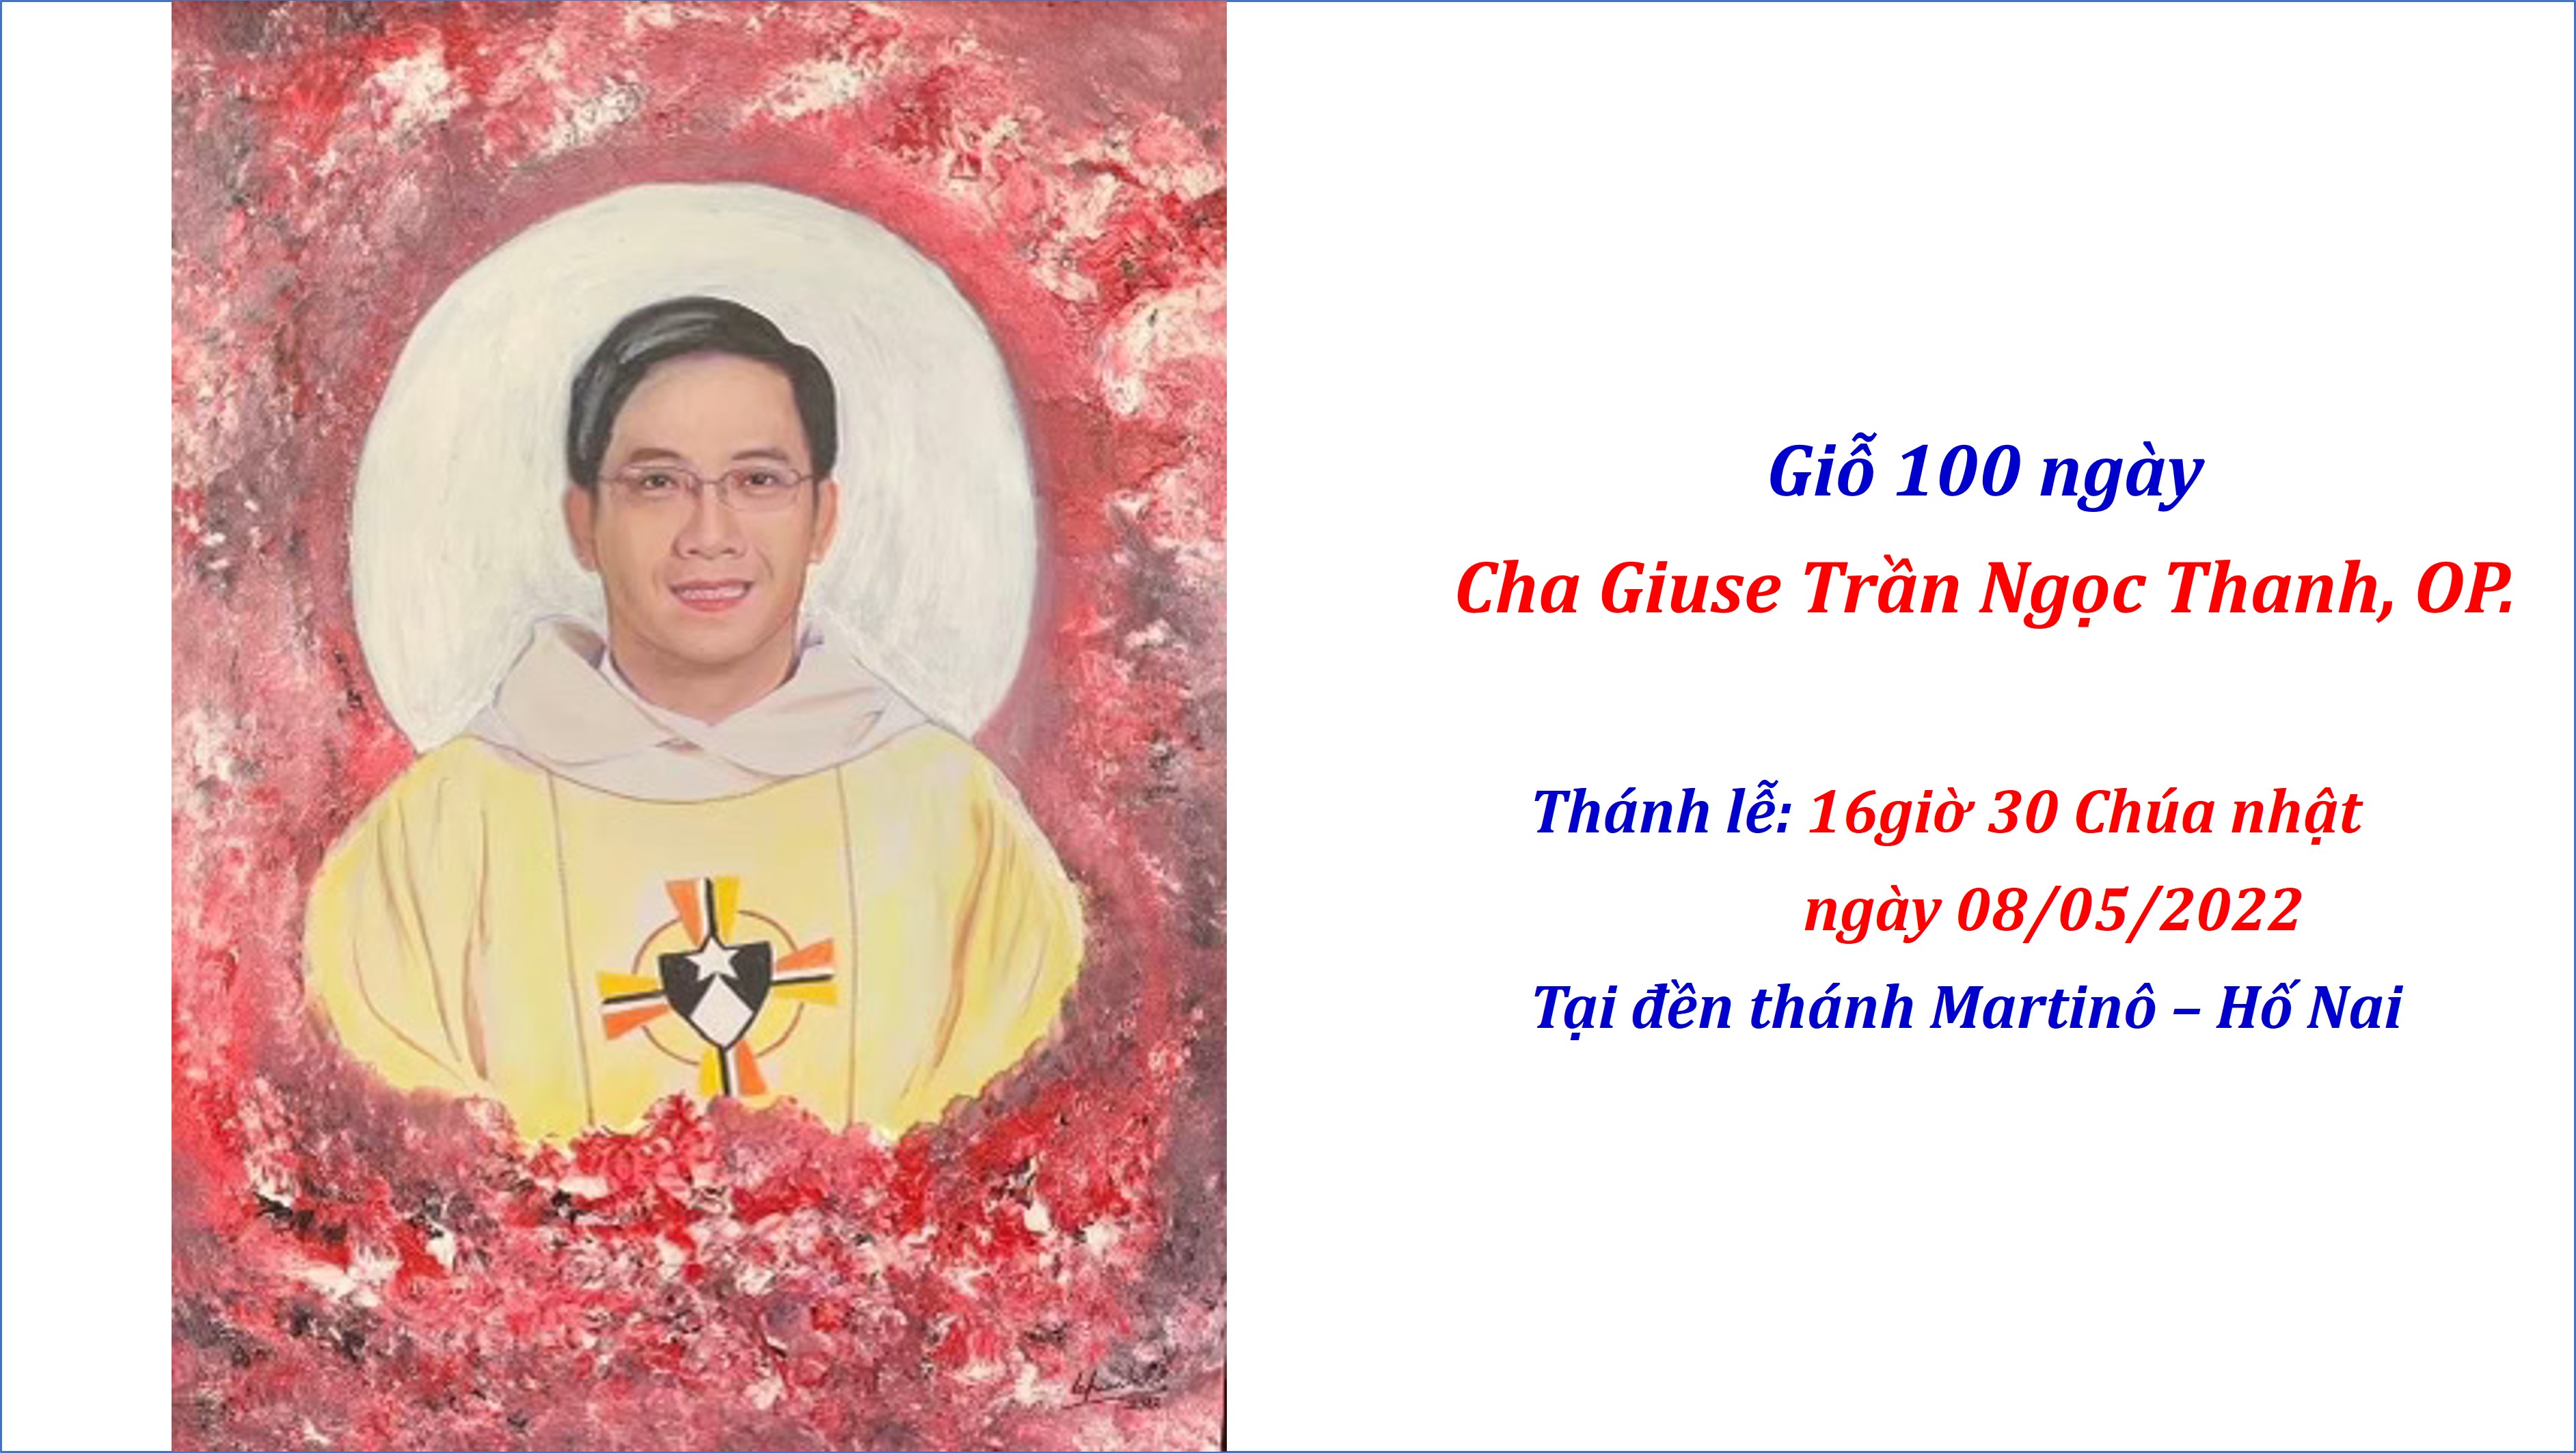 Giỗ 100 ngày Cha Giuse Trần Ngọc Thanh, OP. - Bài giảng của Cha Vinh Sơn Phạm Xuân Hưng, OP.